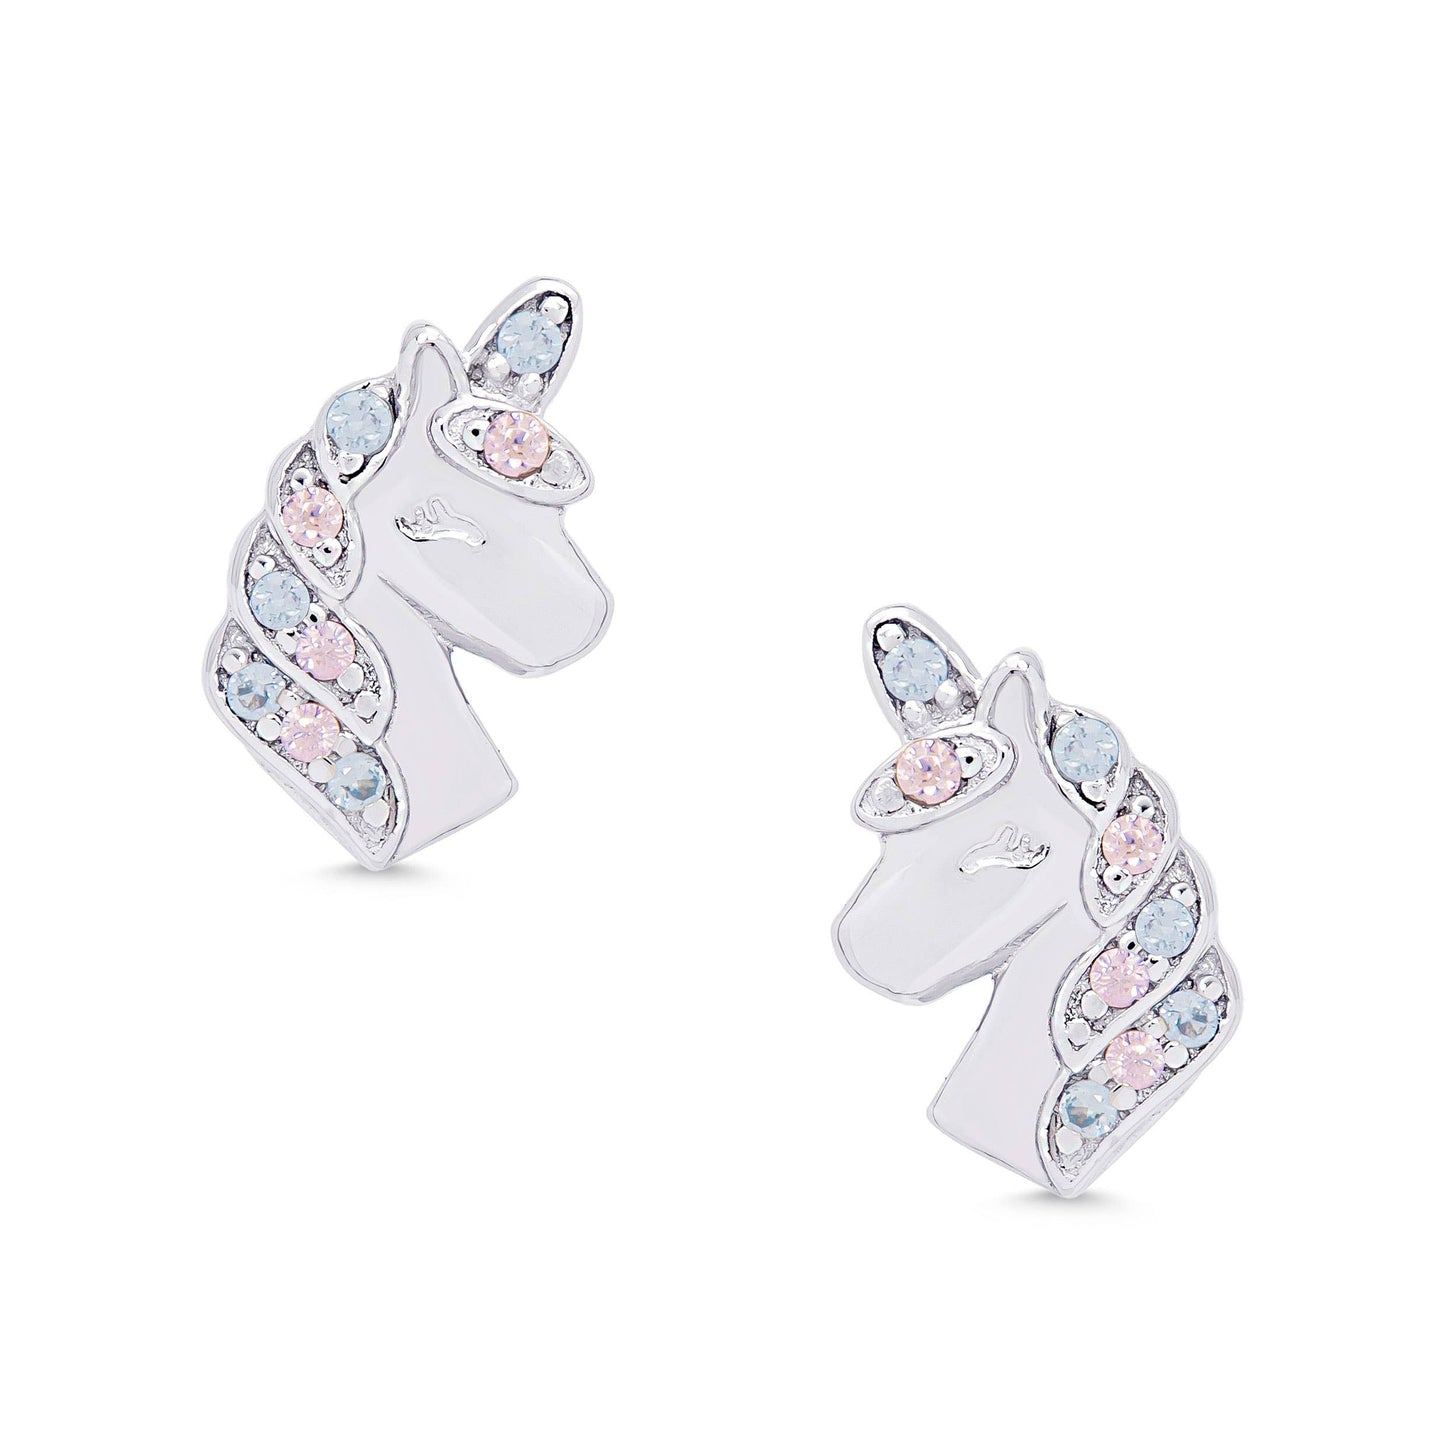 CZ Unicorn Stud Earrings in Sterling Silver (Pink/Blue)